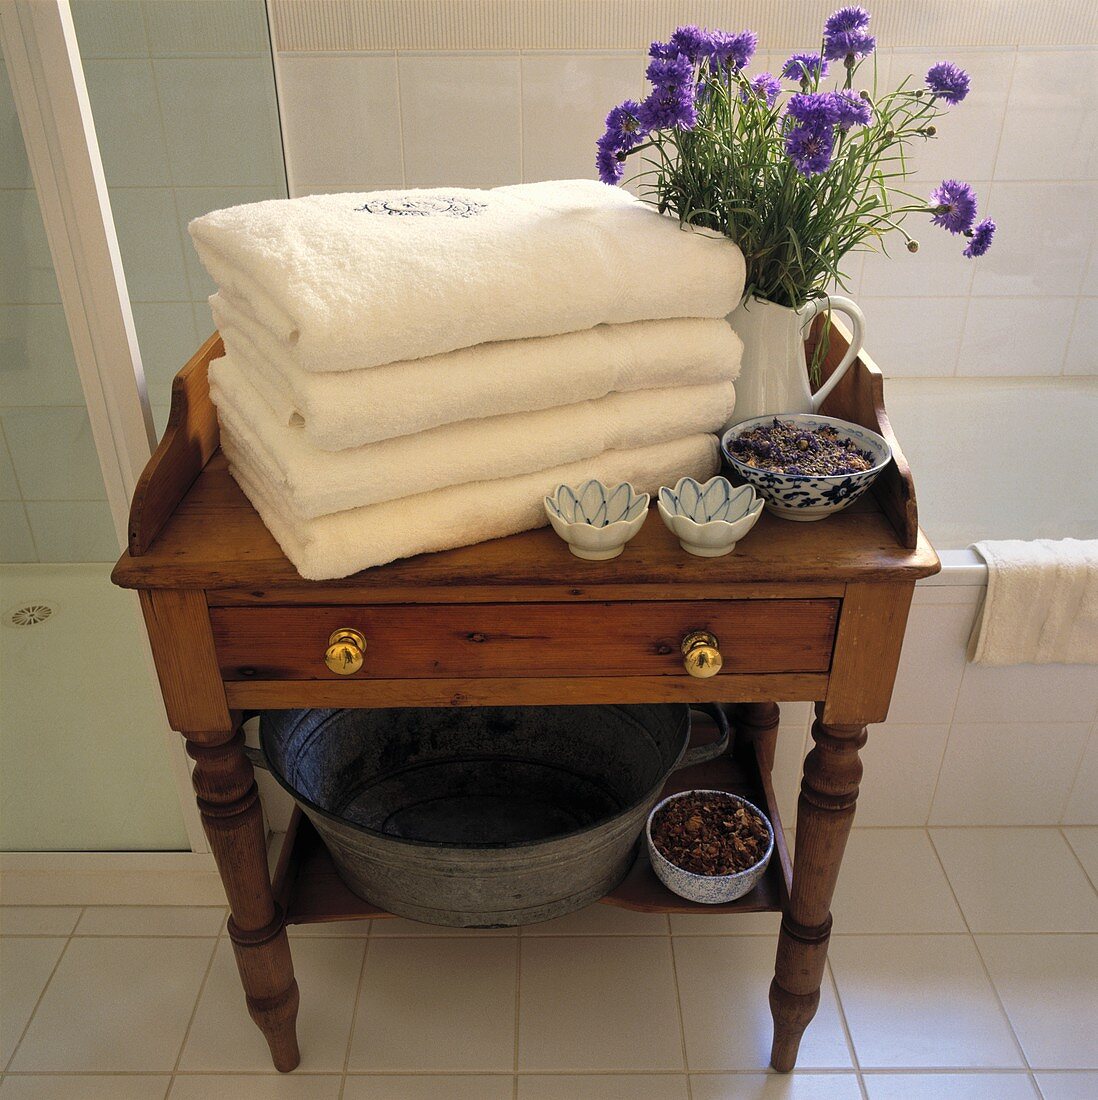 Ein Stapel von weißen Handtüchern und blauen Kornblumen in einem Krug stehen auf einen kleinen antiken Tisch aus Kiefernholz